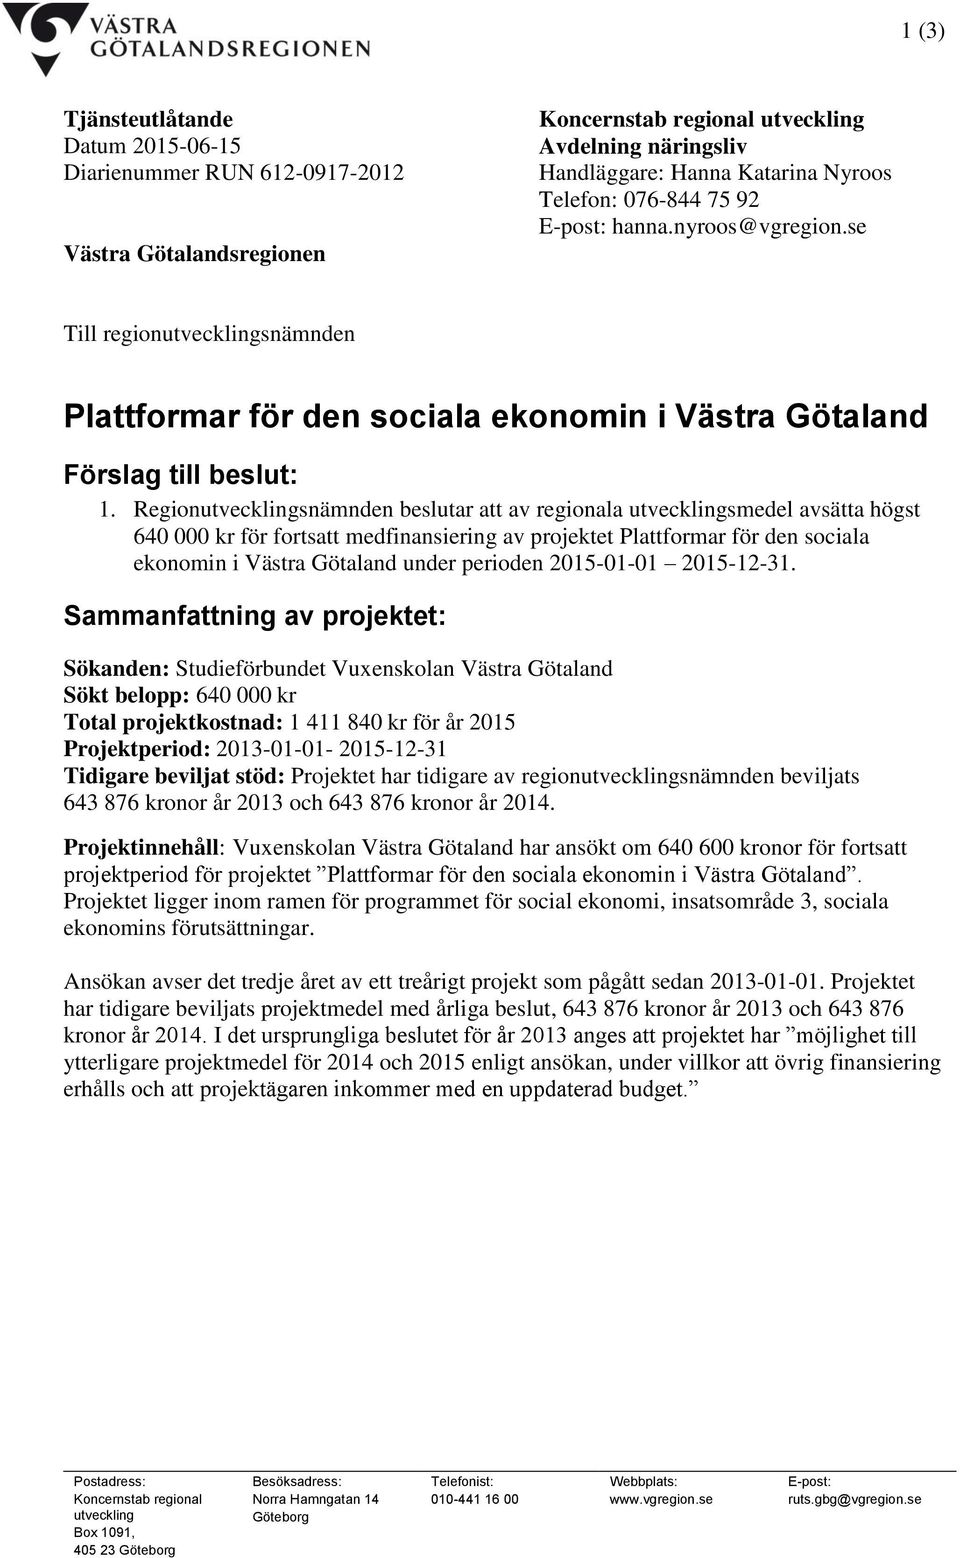 Regionutvecklingsnämnden beslutar att av regionala utvecklingsmedel avsätta högst 640 000 kr för fortsatt medfinansiering av projektet Plattformar för den sociala ekonomin i Västra Götaland under